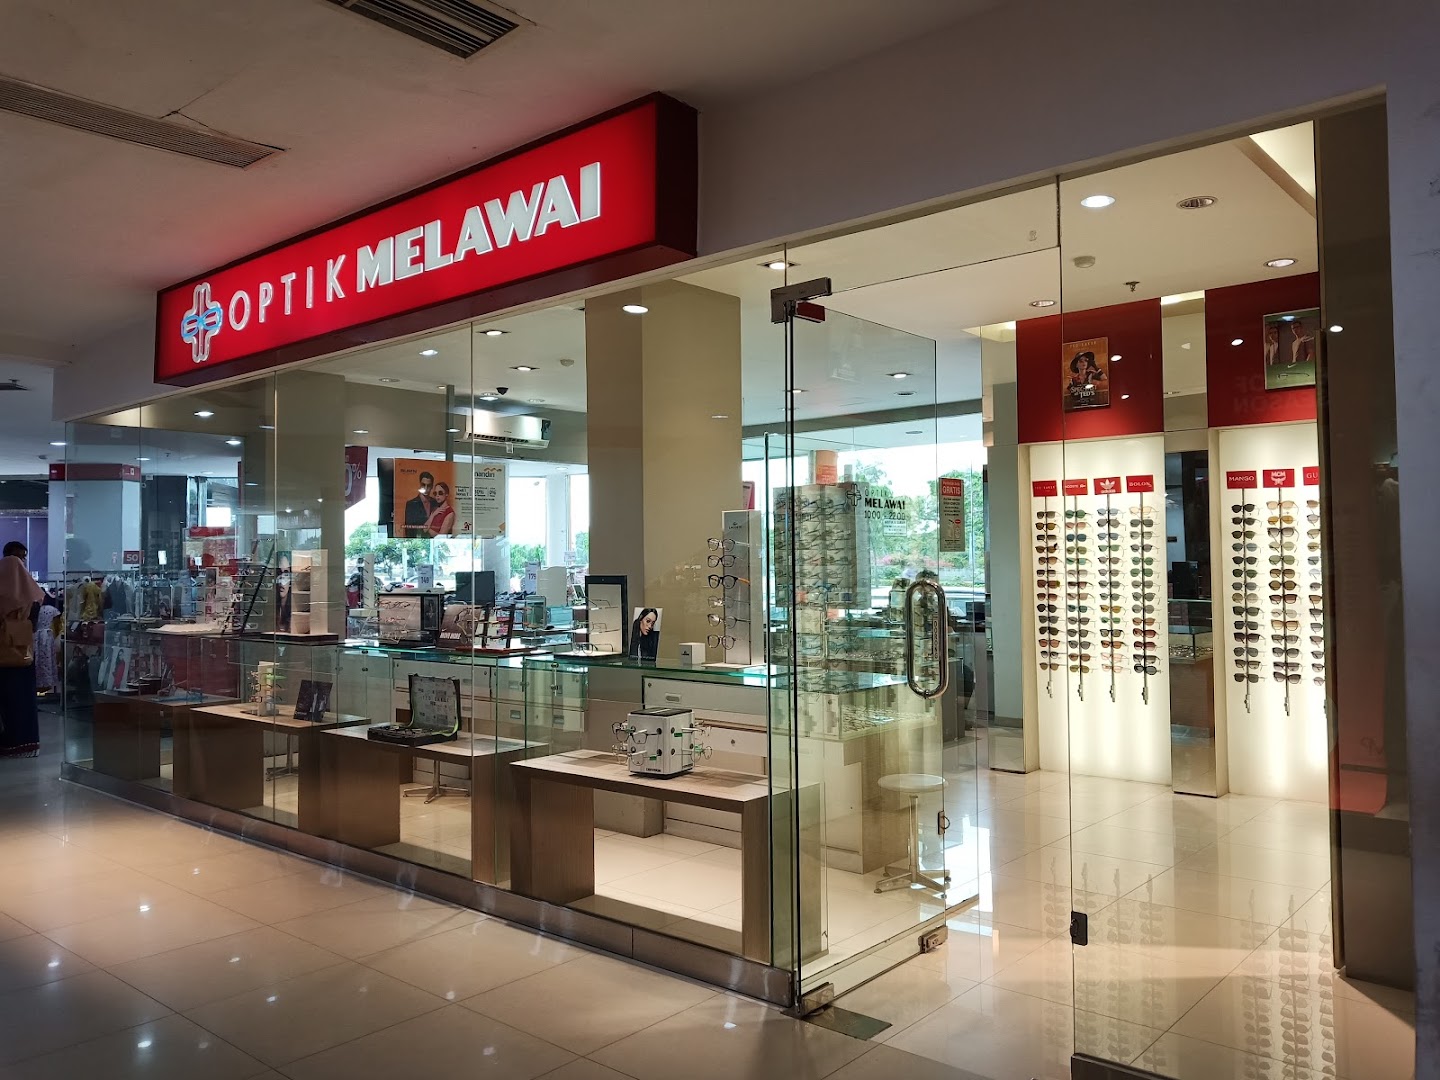 Gambar Optik Melawai - Hermes Palace Mall Aceh